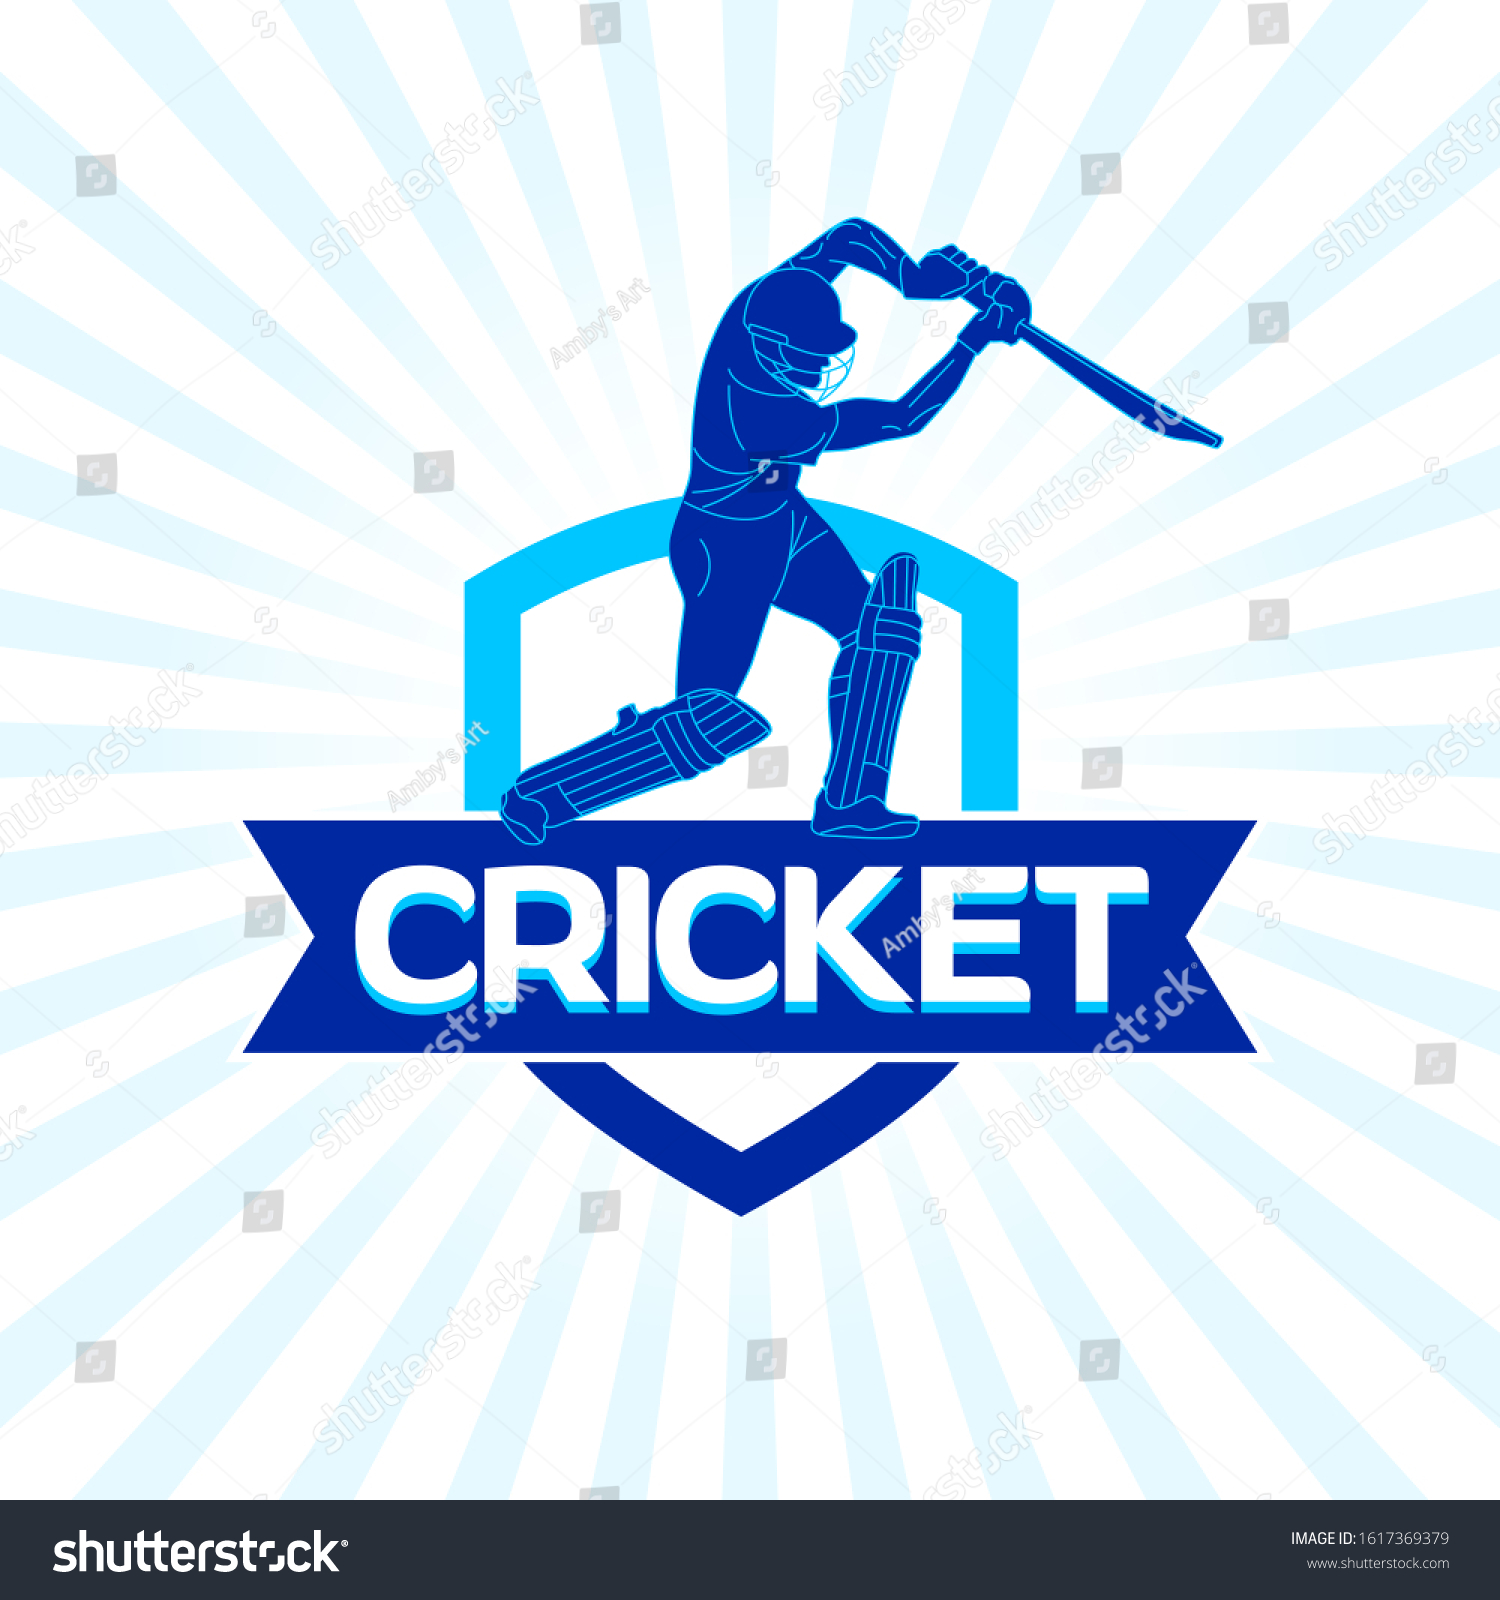 Abstract Cricket Team Logo Design Concept Stock Vector (Royalty Free ...